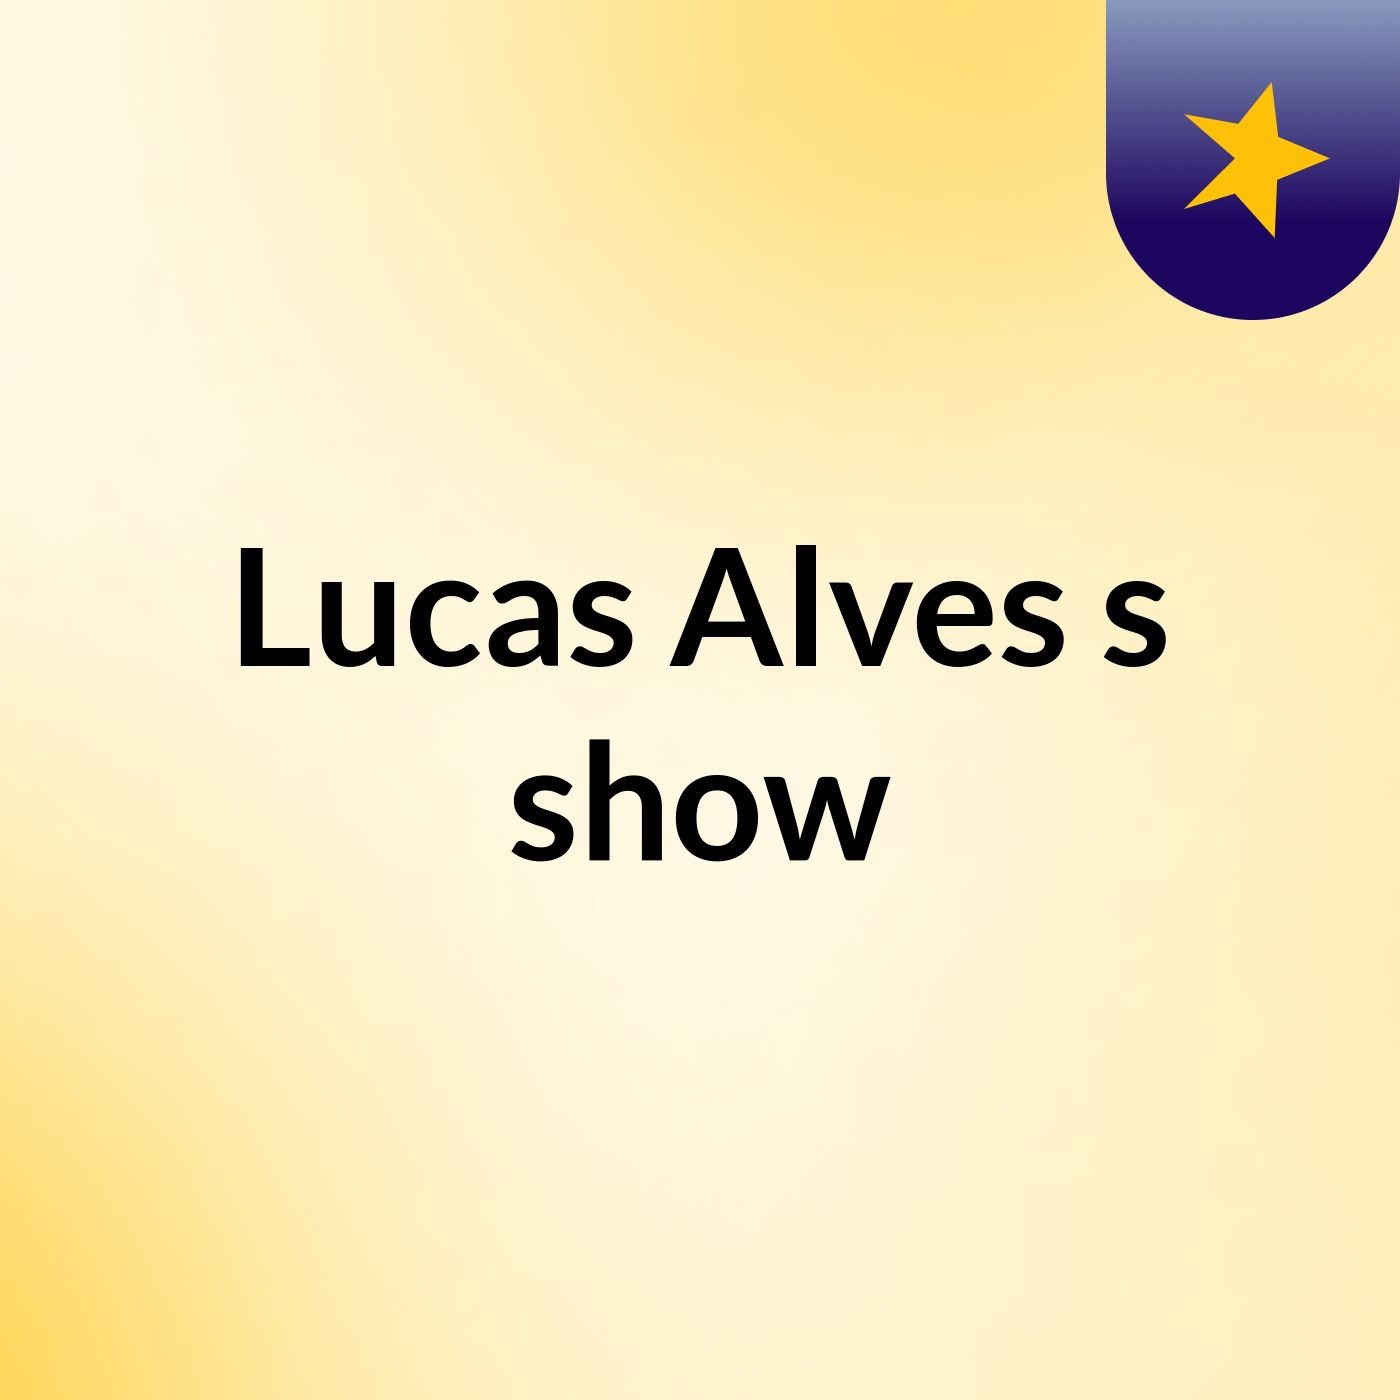 Lucas Alves's show